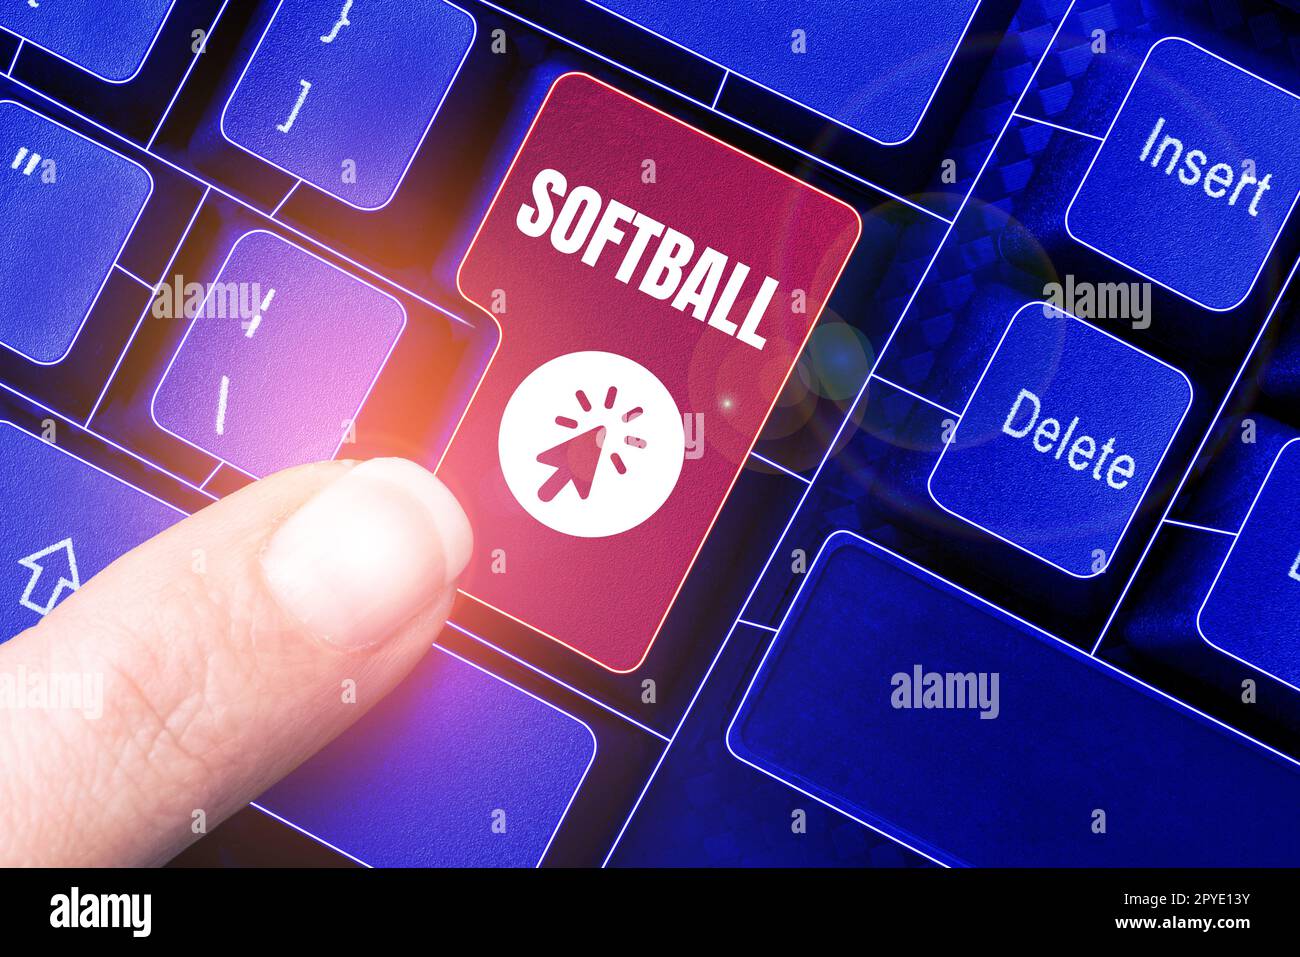 Handschriftliches Schild Softball. Ein Wort für einen Sport, der dem Baseball ähnelt, der mit einem Ball und einem Schläger gespielt wird Stockfoto